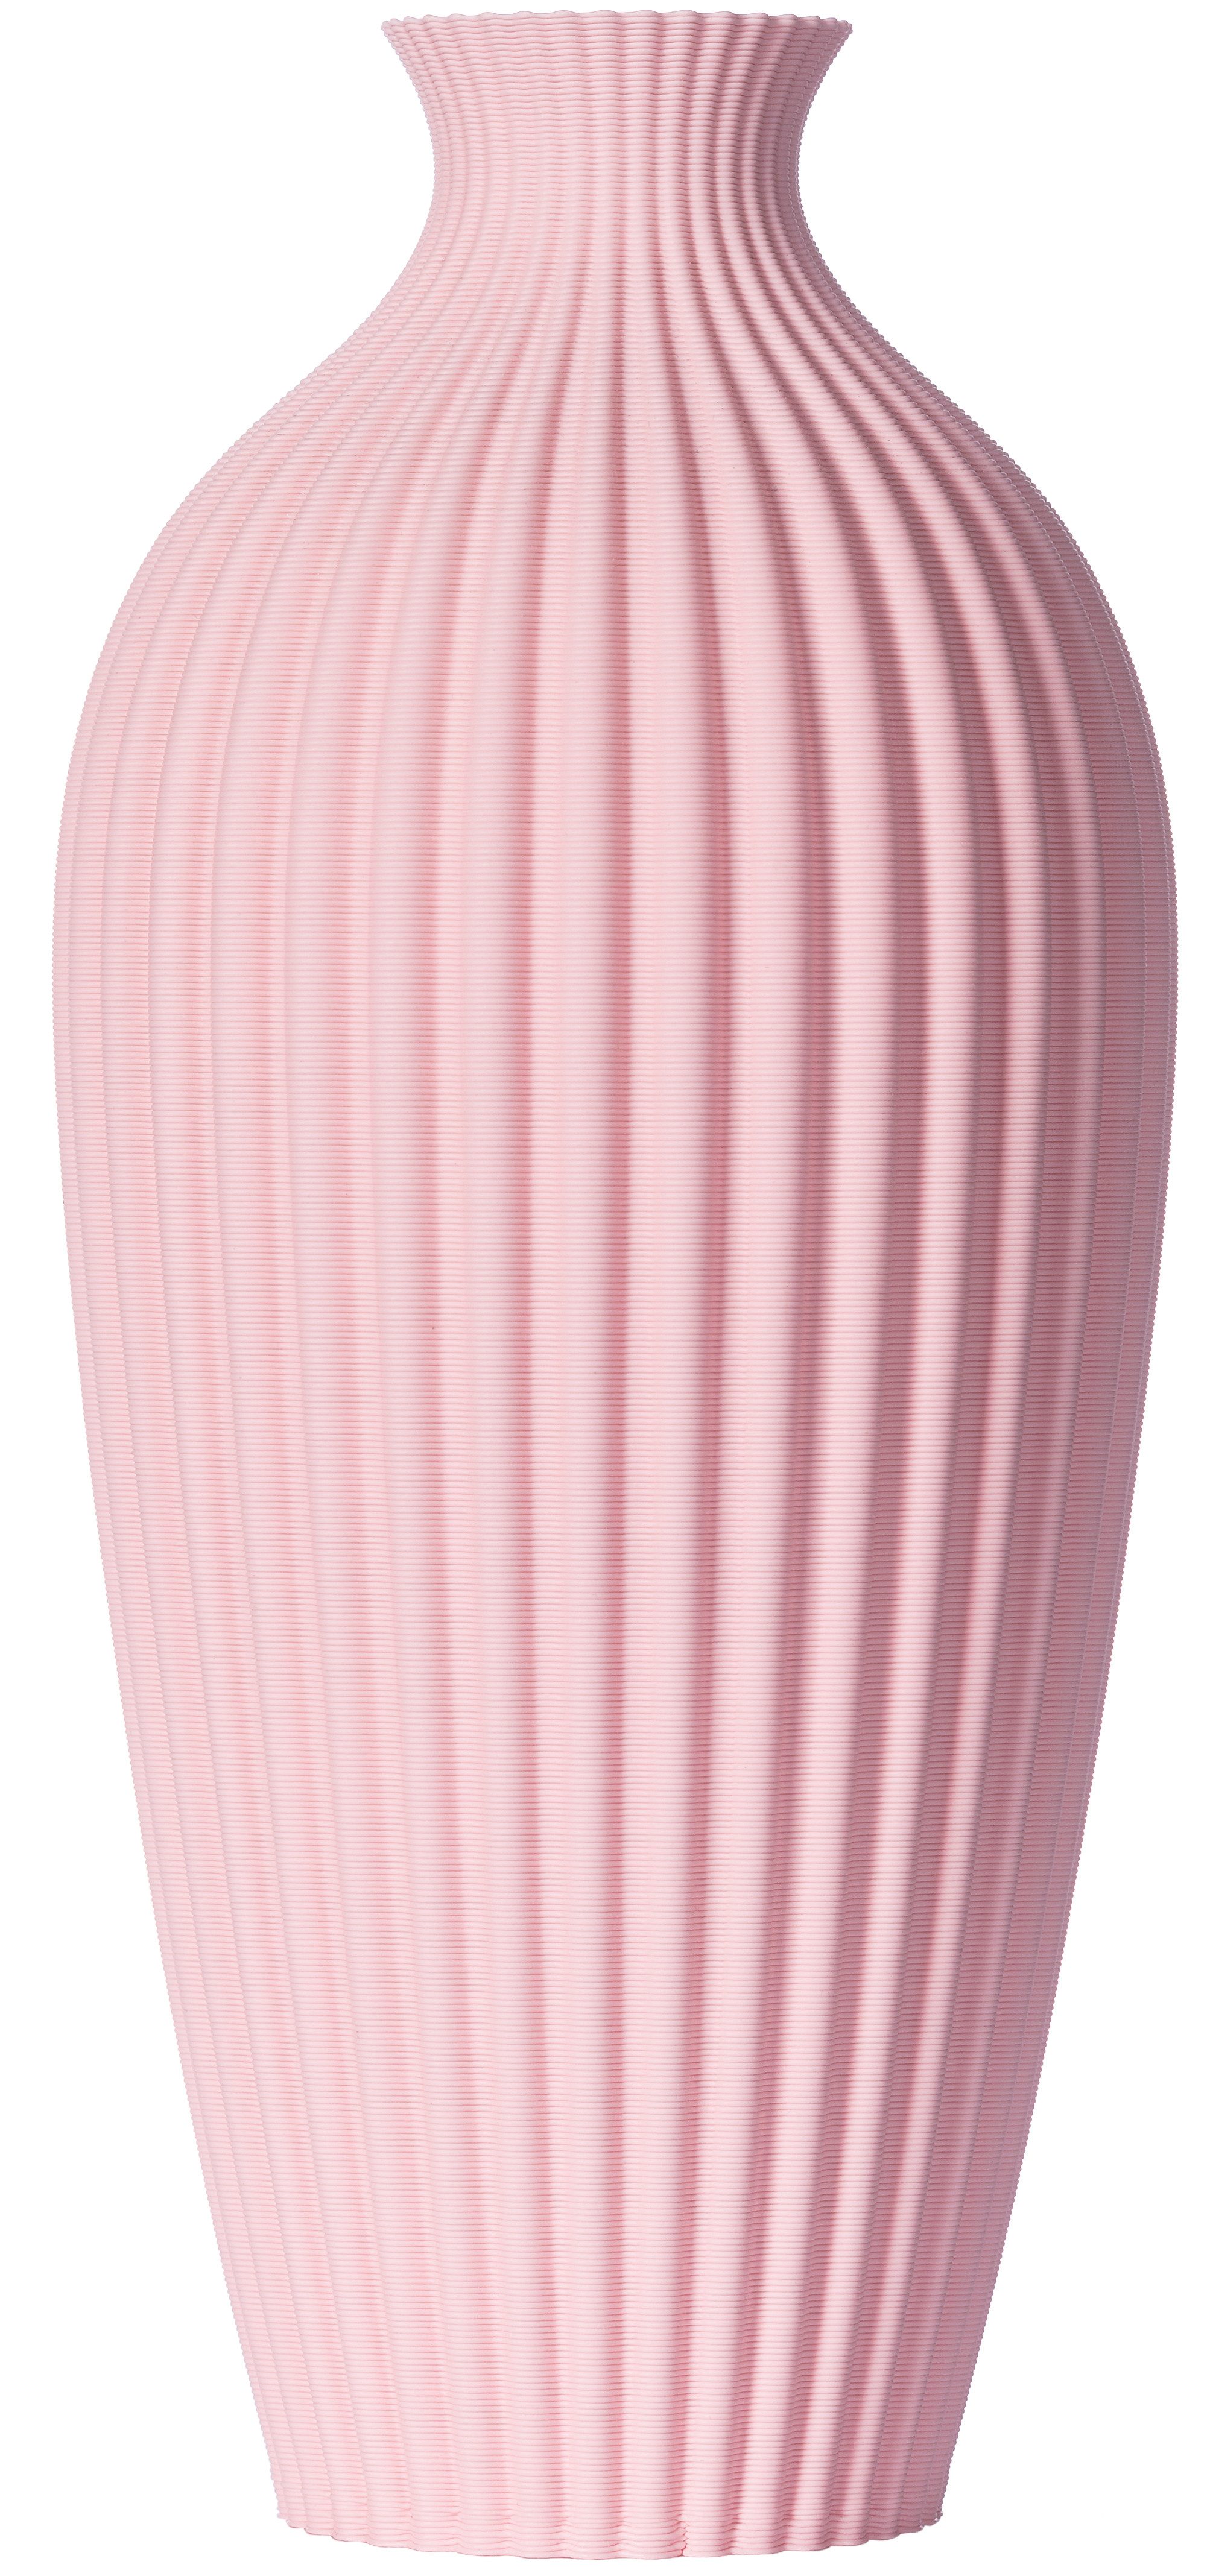 3D Vase Dekovase Saskia M 24cm Nachhaltige Blumenvase für Schnitt-/ Trockenblumen, Deko Vase